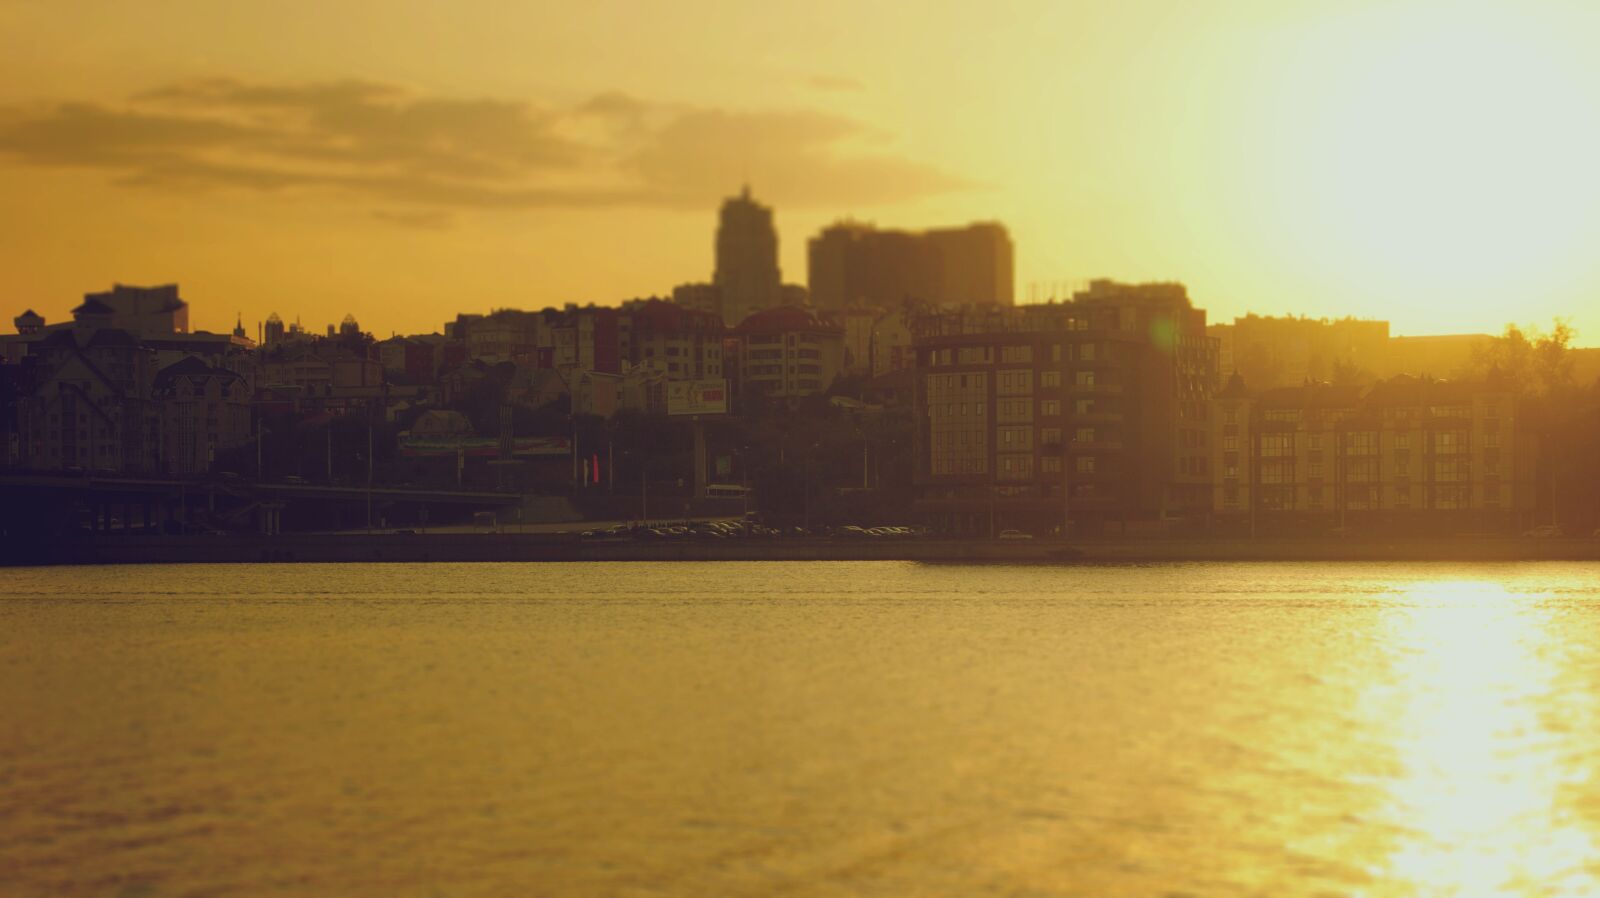 Sony Alpha DSLR-A290 sample photo. City, embankment, sunset photography